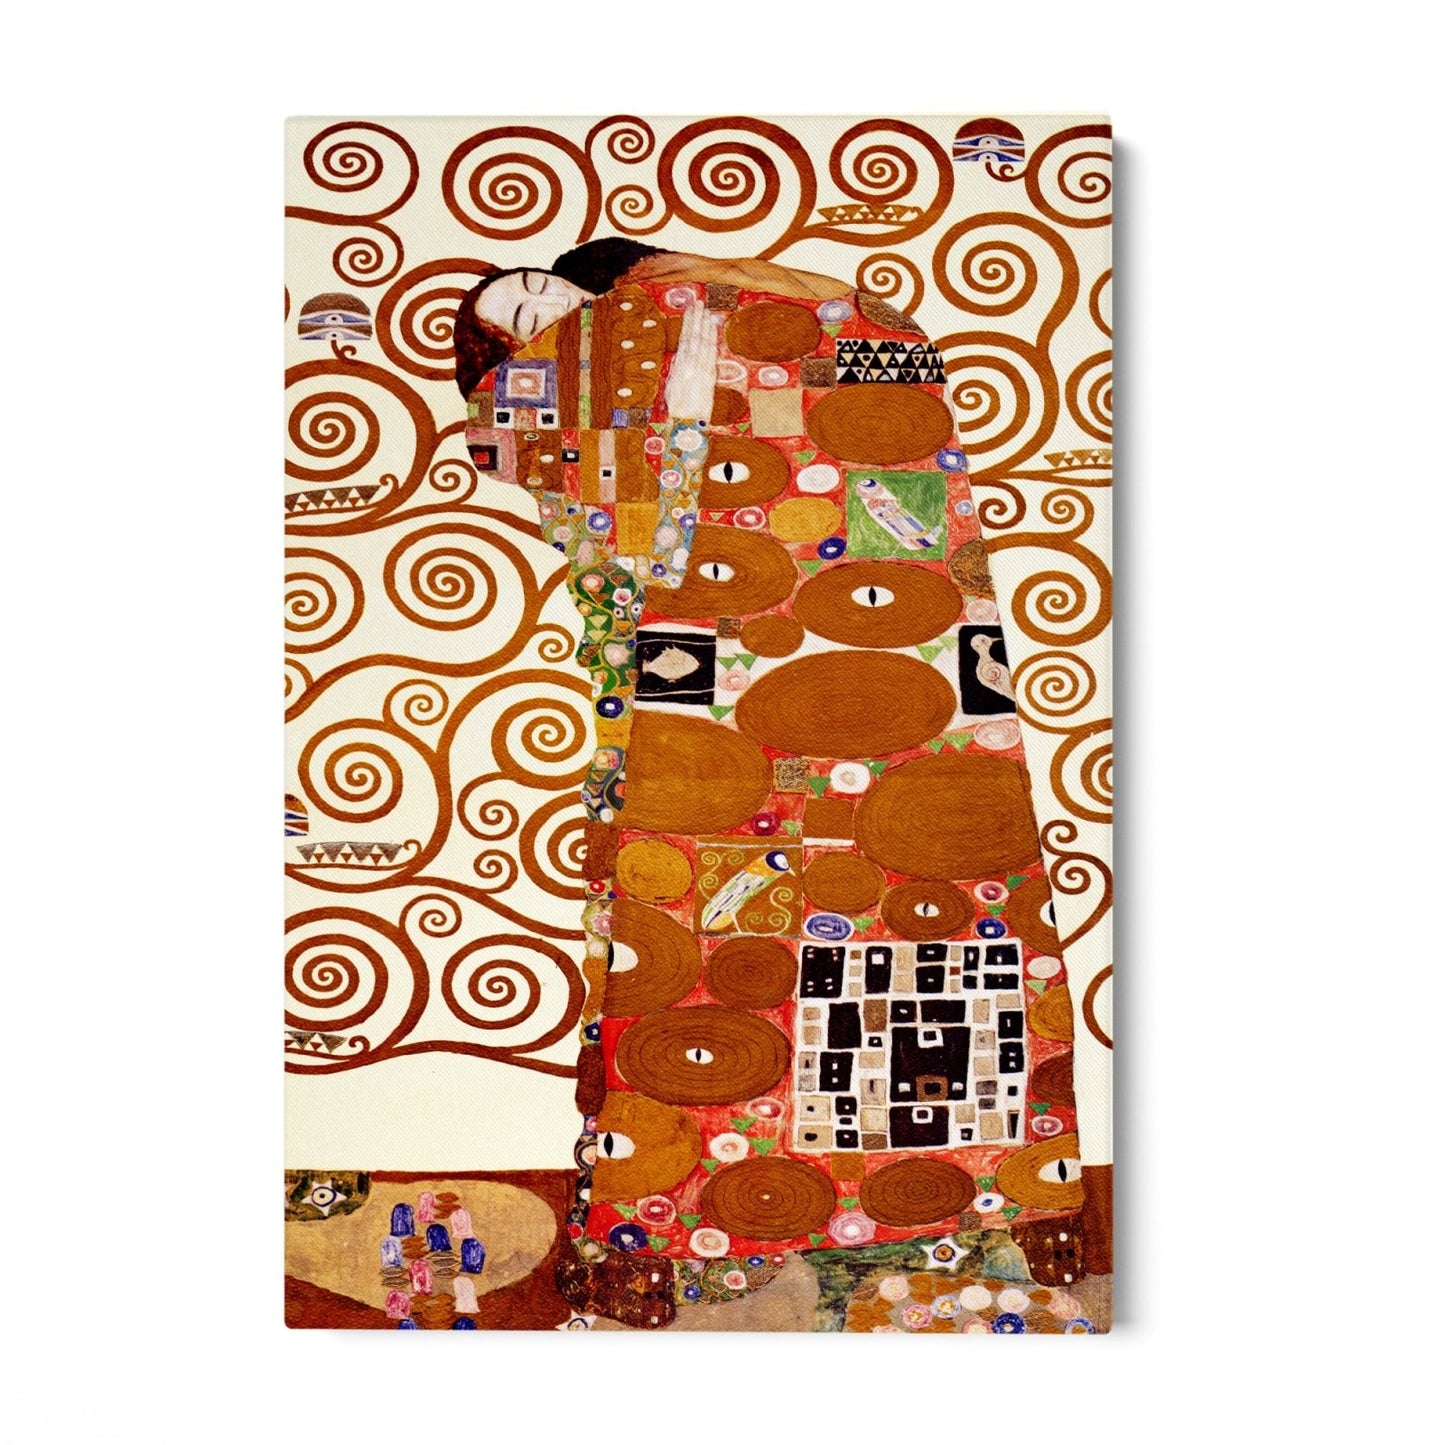 L'Abbraccio di Klimt